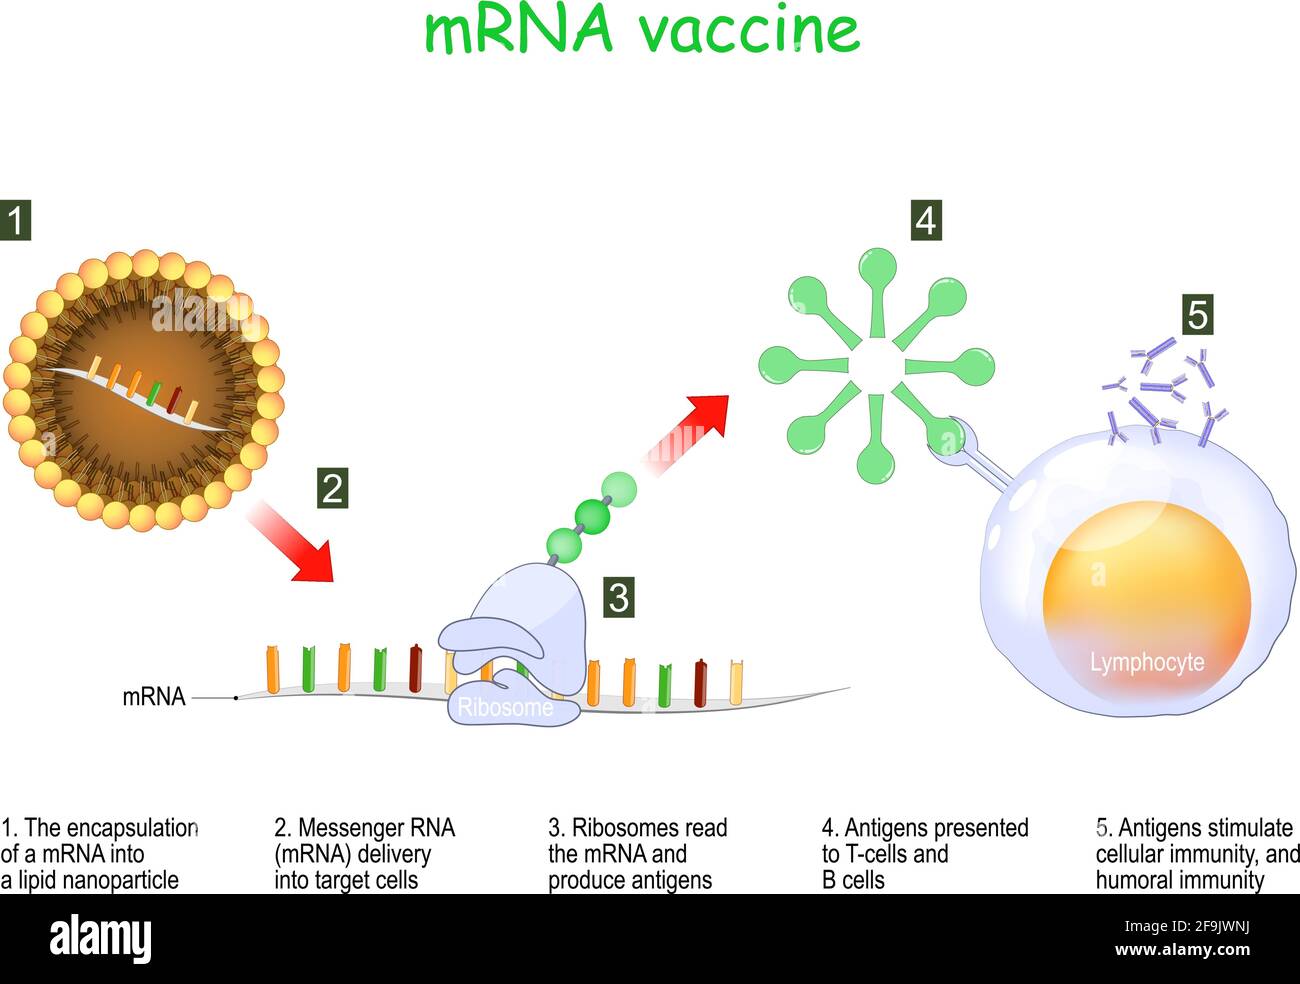 MRNA-Impfstoff. Die Verkapselung einer Messenger-RNA in ein Lipid-Nanopartikel und die Abgabe in Zielzellen. Ribosomen lesen die mRNA und produzieren Antig Stock Vektor